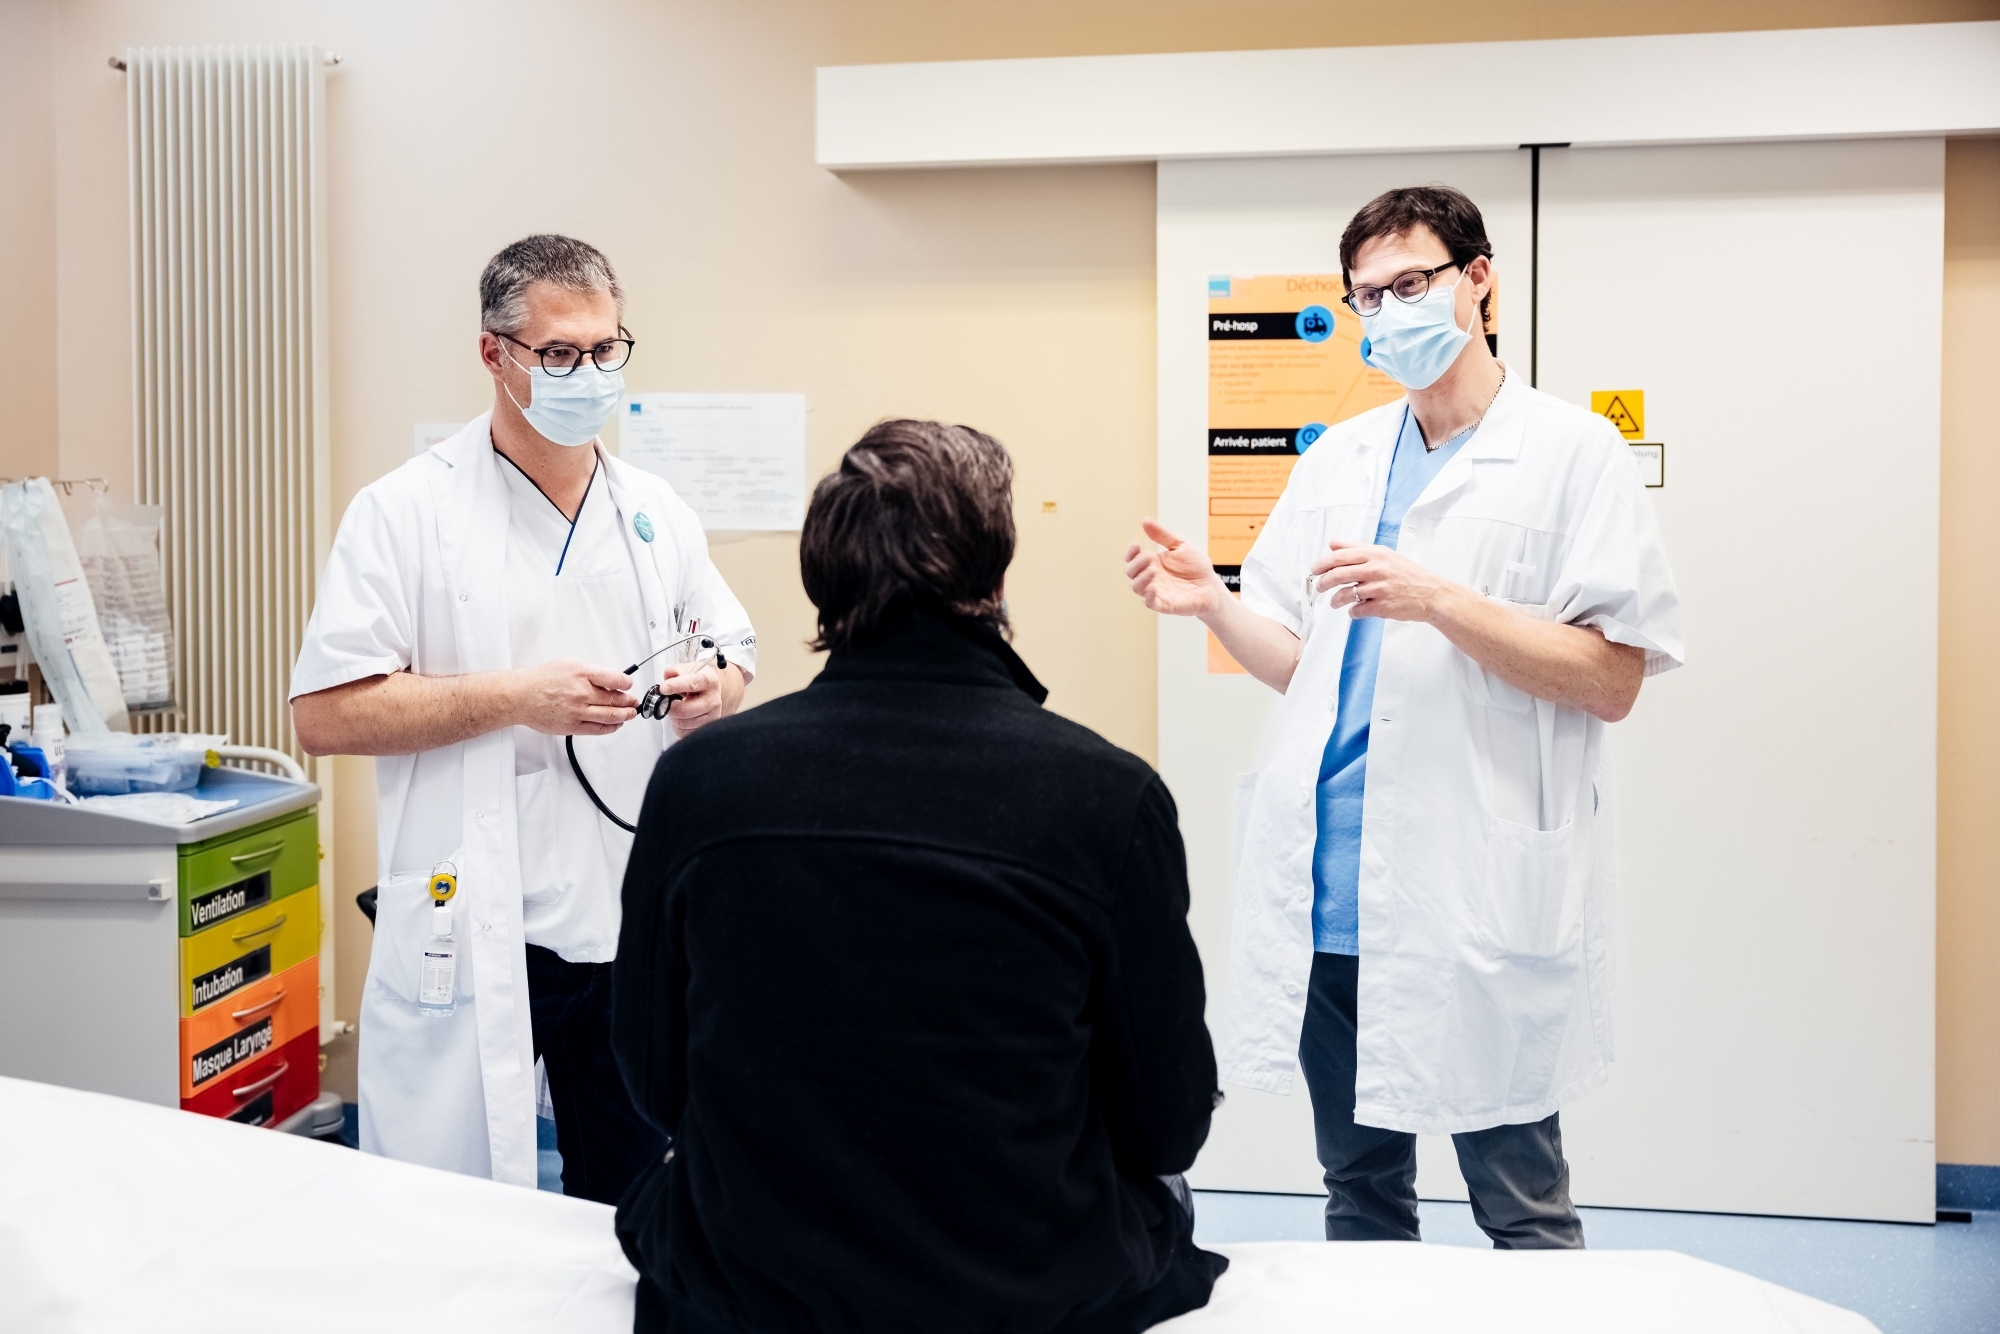 De gauche à droite, le Dr Vincent Della Santa, médecin-chef des urgences, et le Dr Stéphane Saillant, qui dirige le Centre d'urgences psychiatriques.